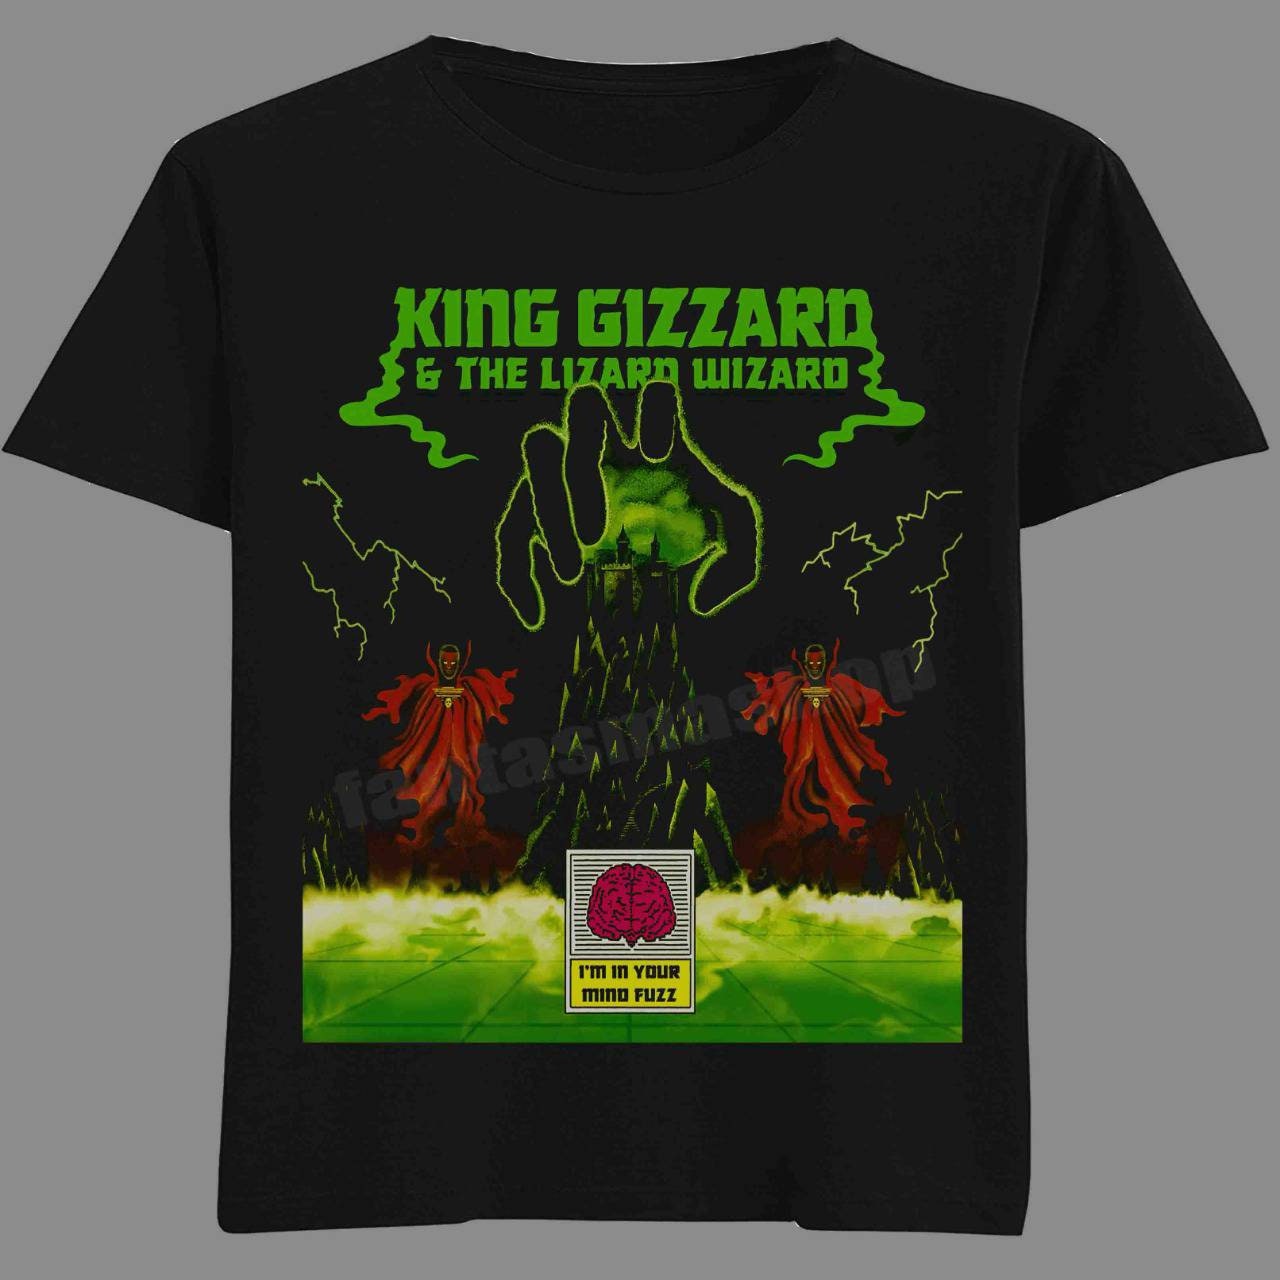 King Gizzard & the lizard wizard tshirt